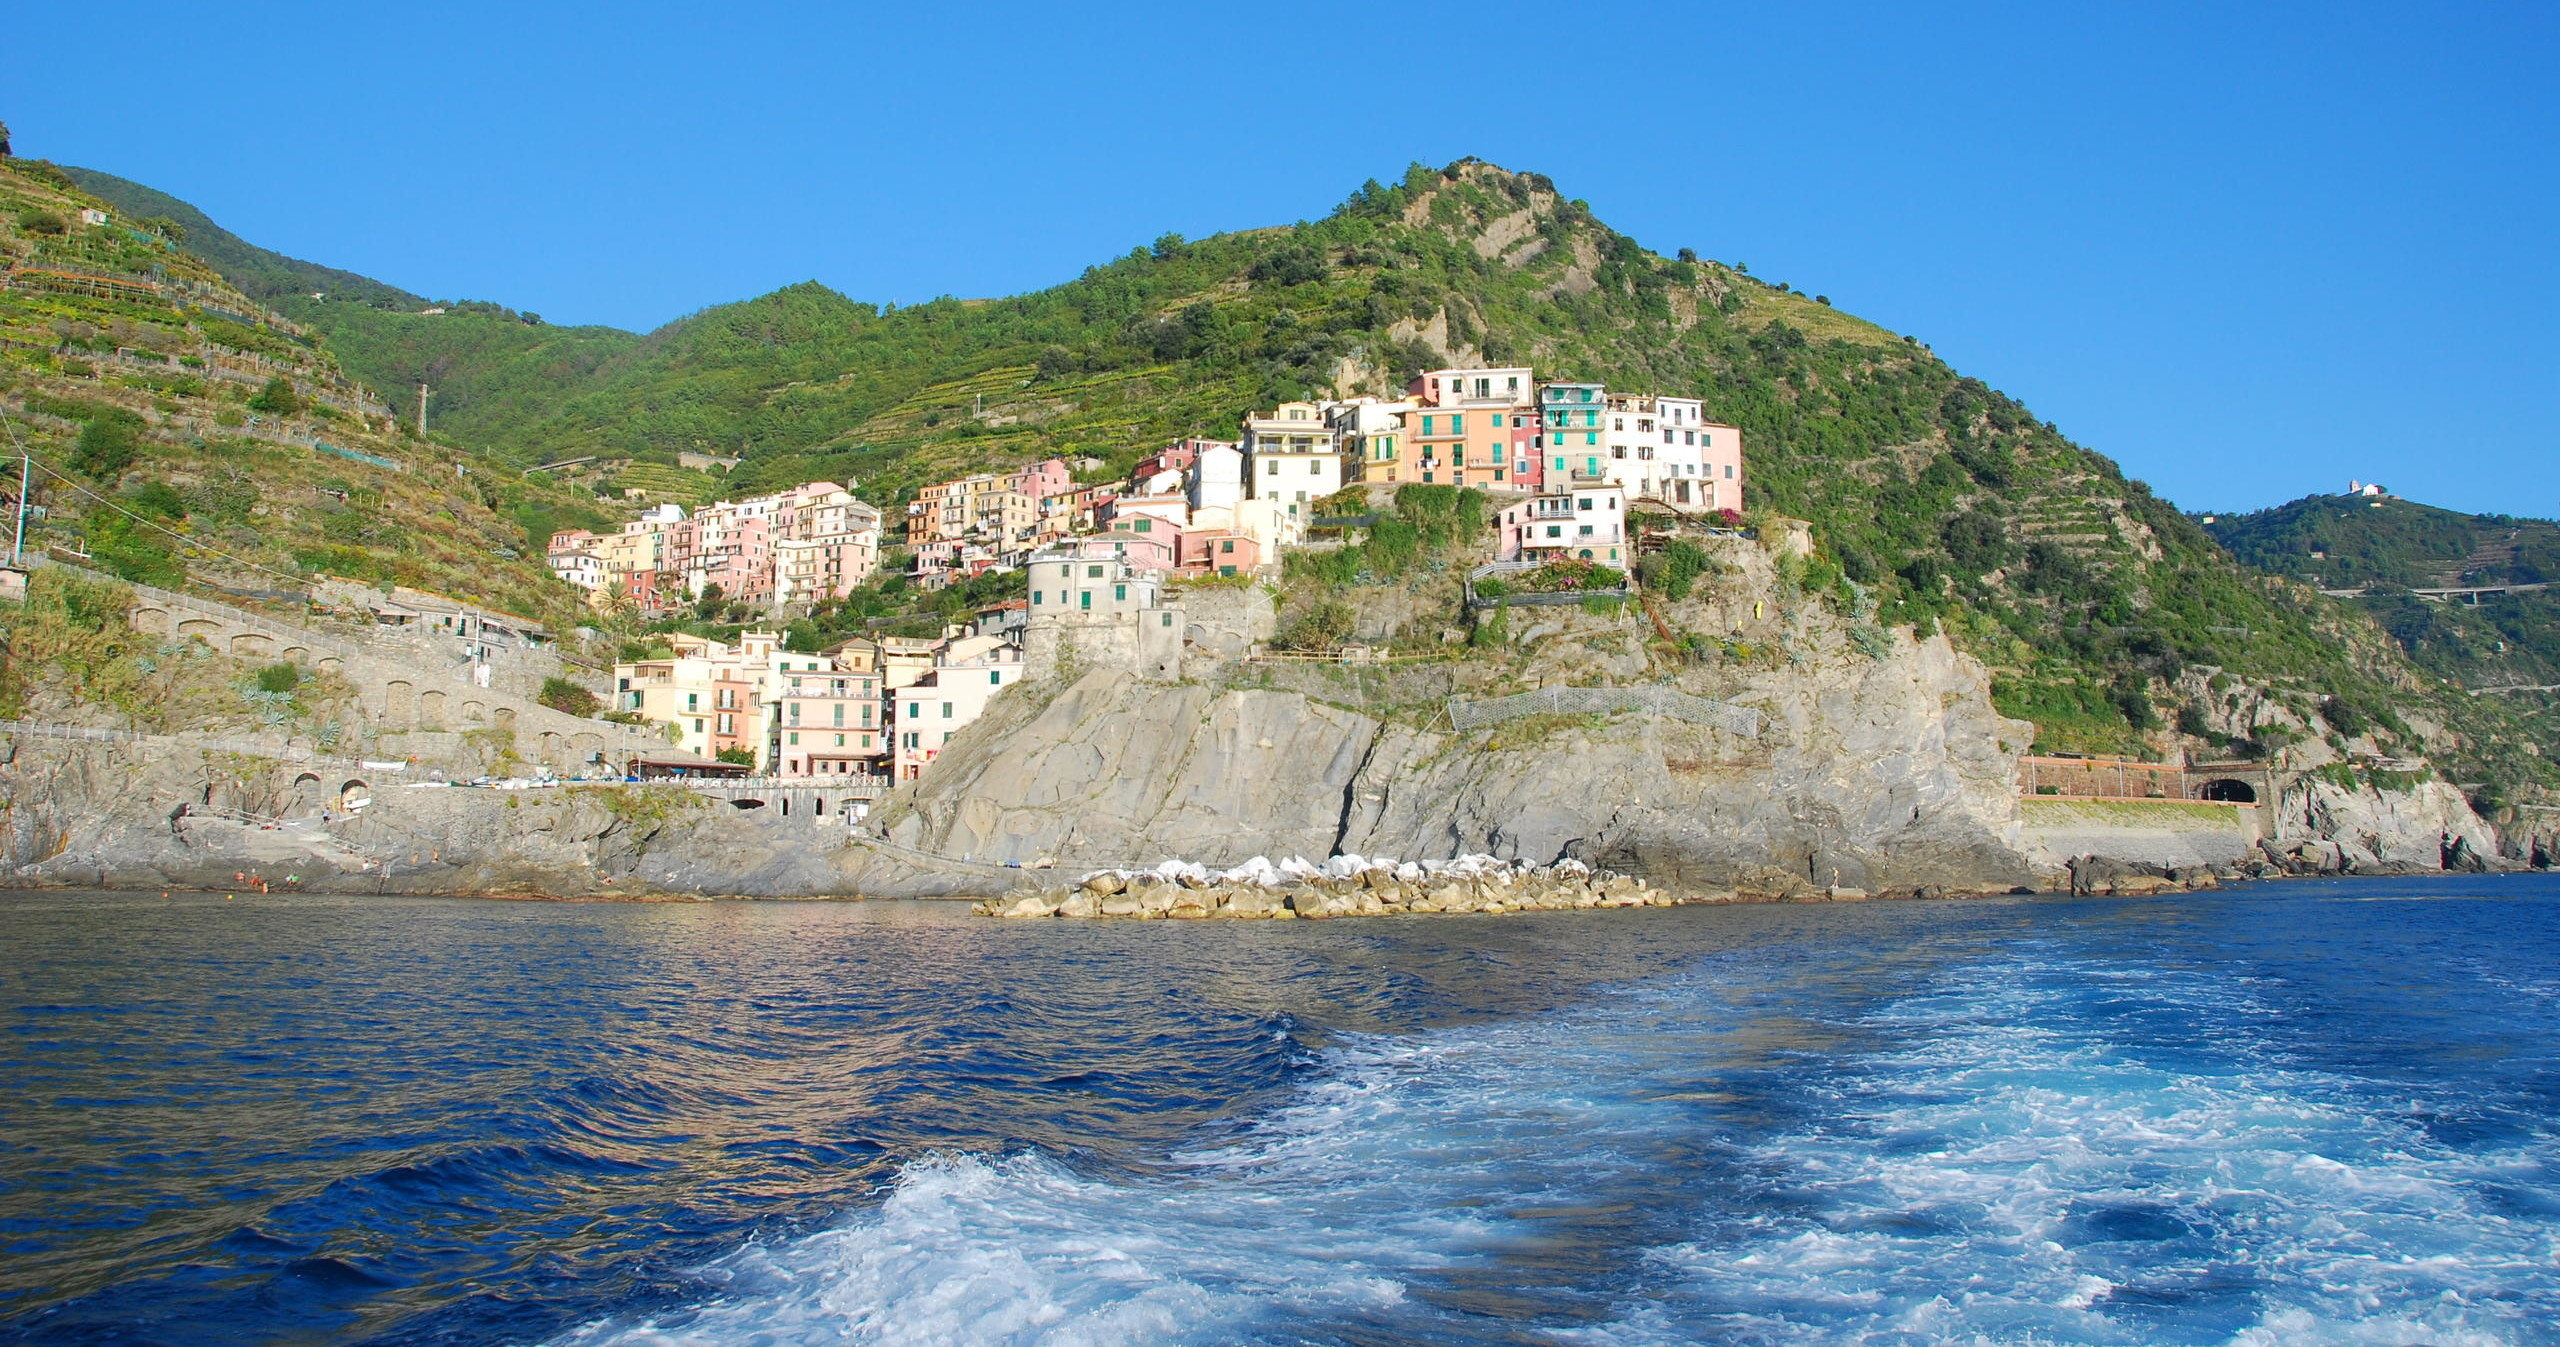 The Azure Day: Sailing Along the Cinque Terre Coast in Semi-Private - Accommodations in La Spezia